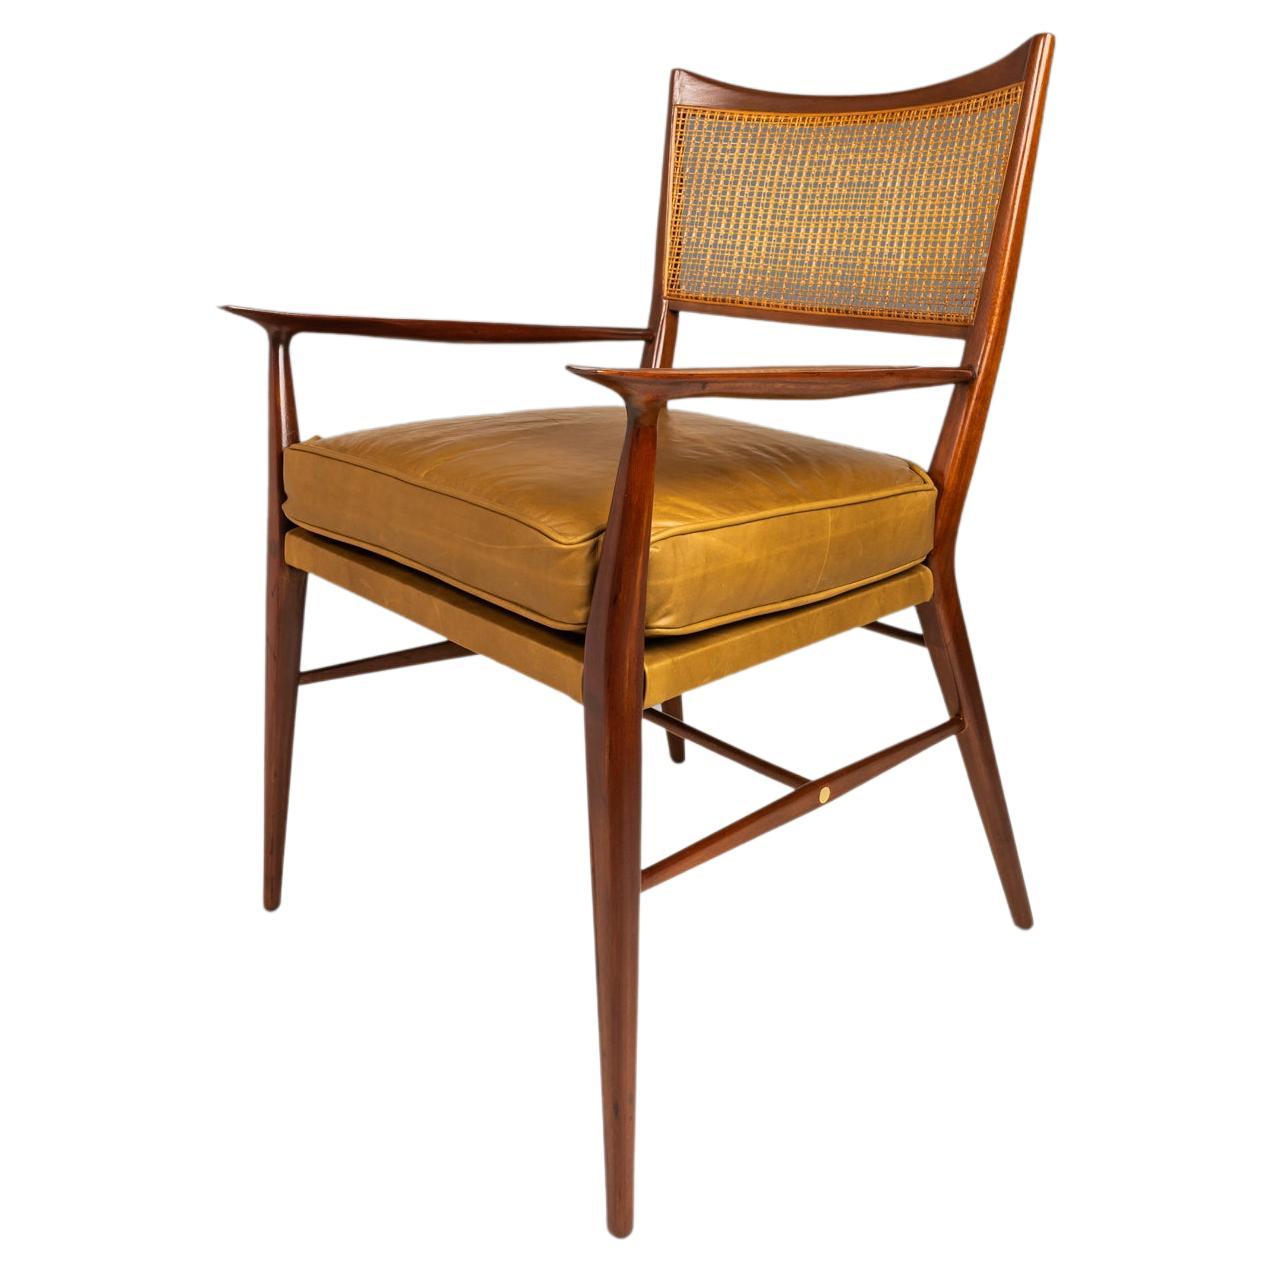 MCM Modell 7001 Stuhl aus Nussbaumholz von Paul McCobb für Directional, USA, ca. 1950er Jahre